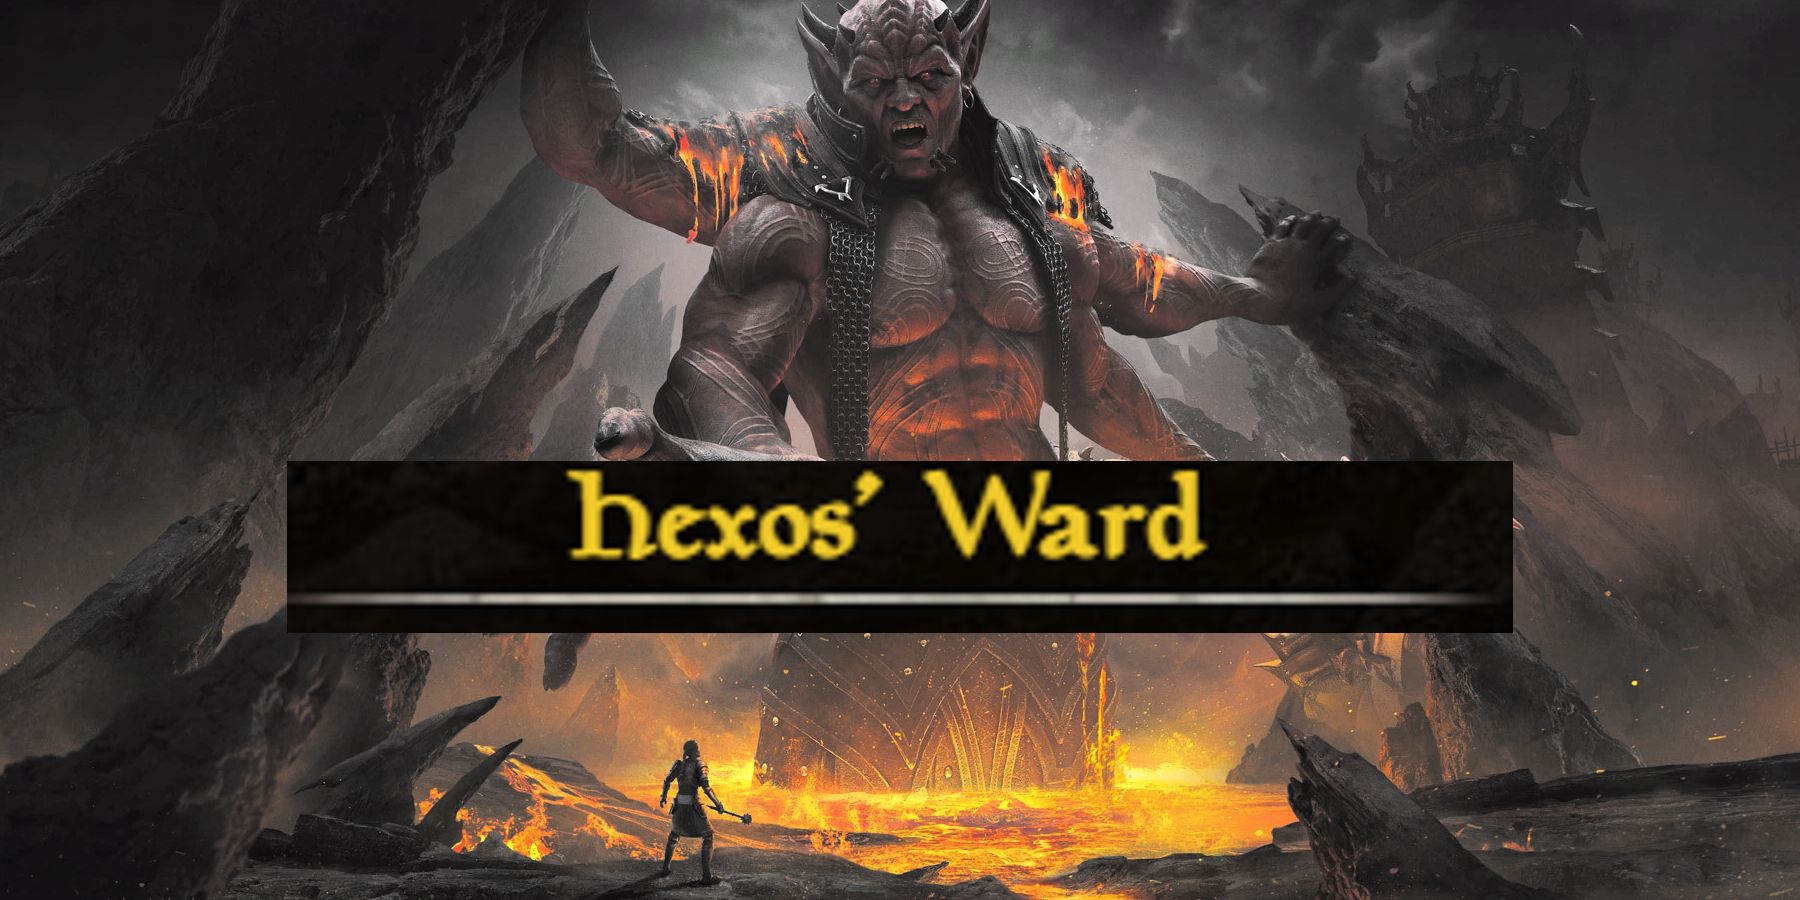 ESO Deadlands Hexos Ward Armor Set Guide